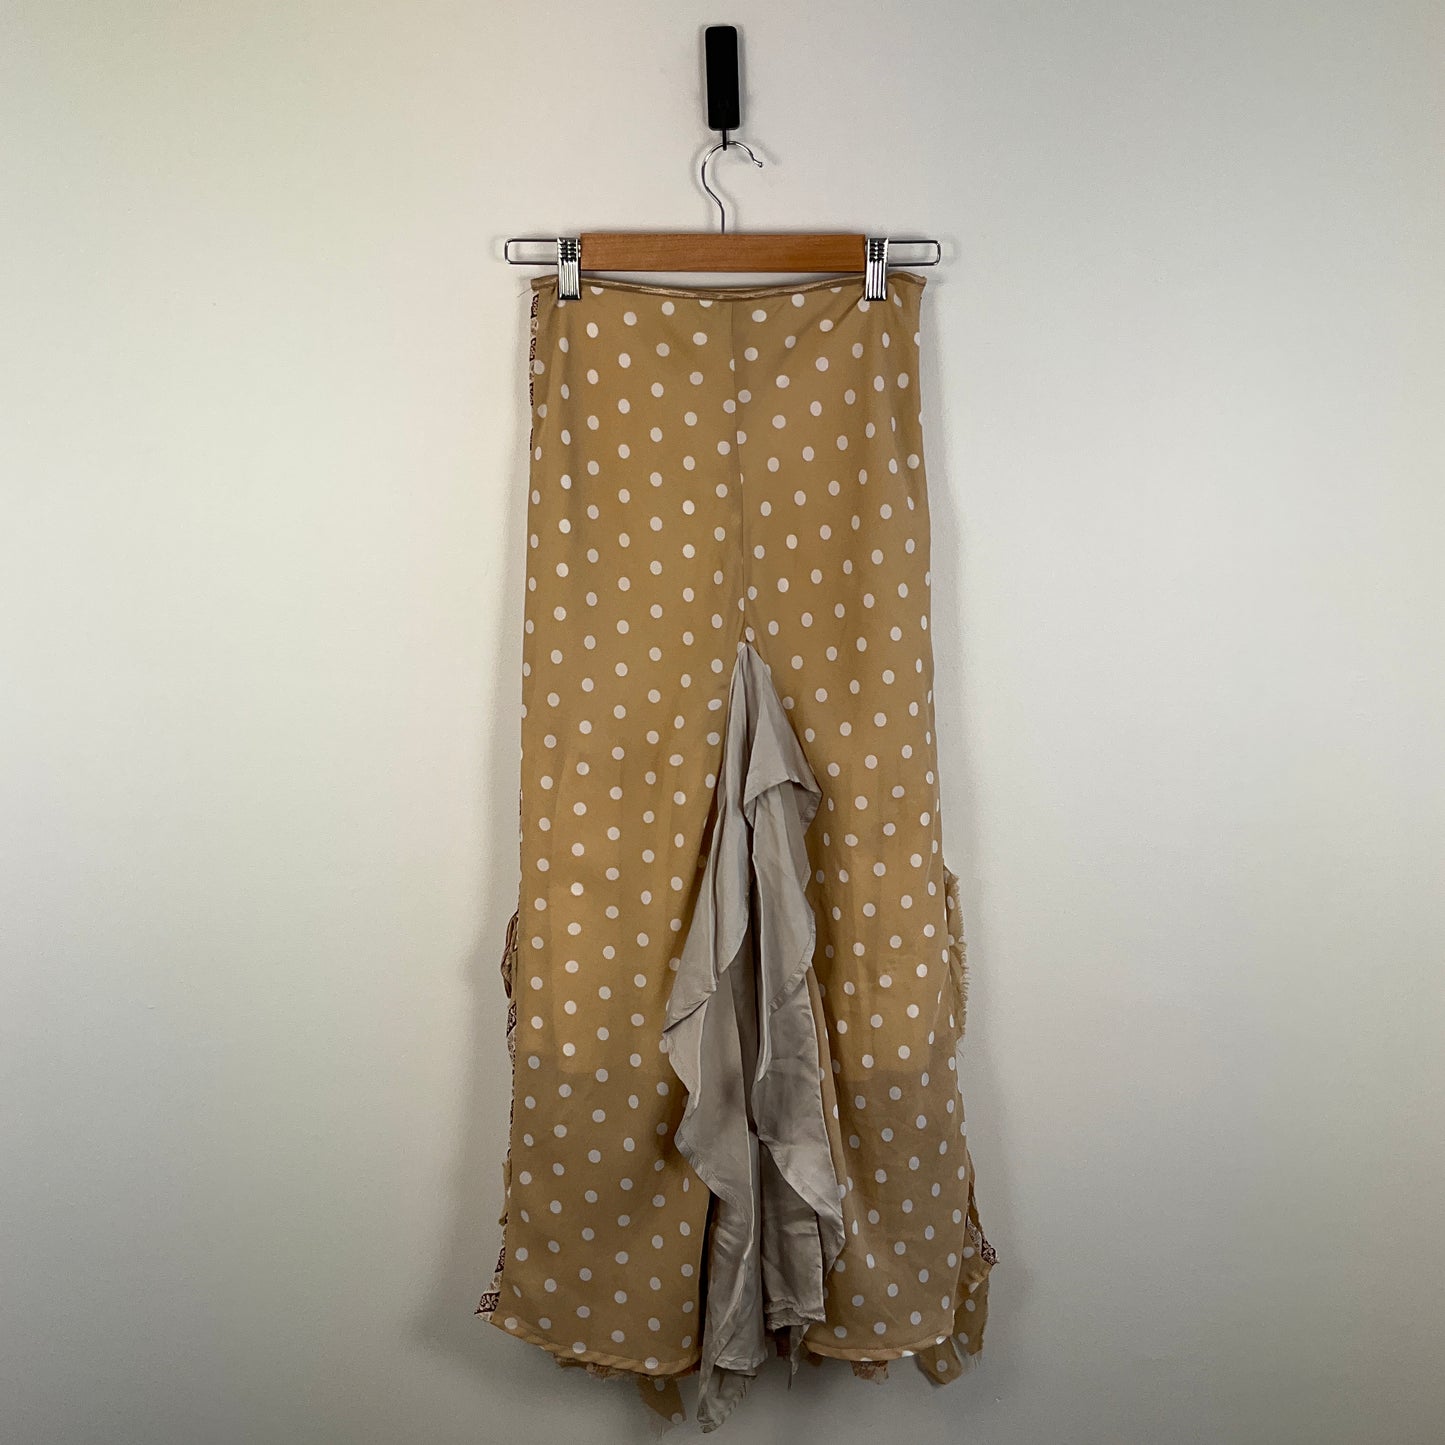 Annah Stretton - Skirt